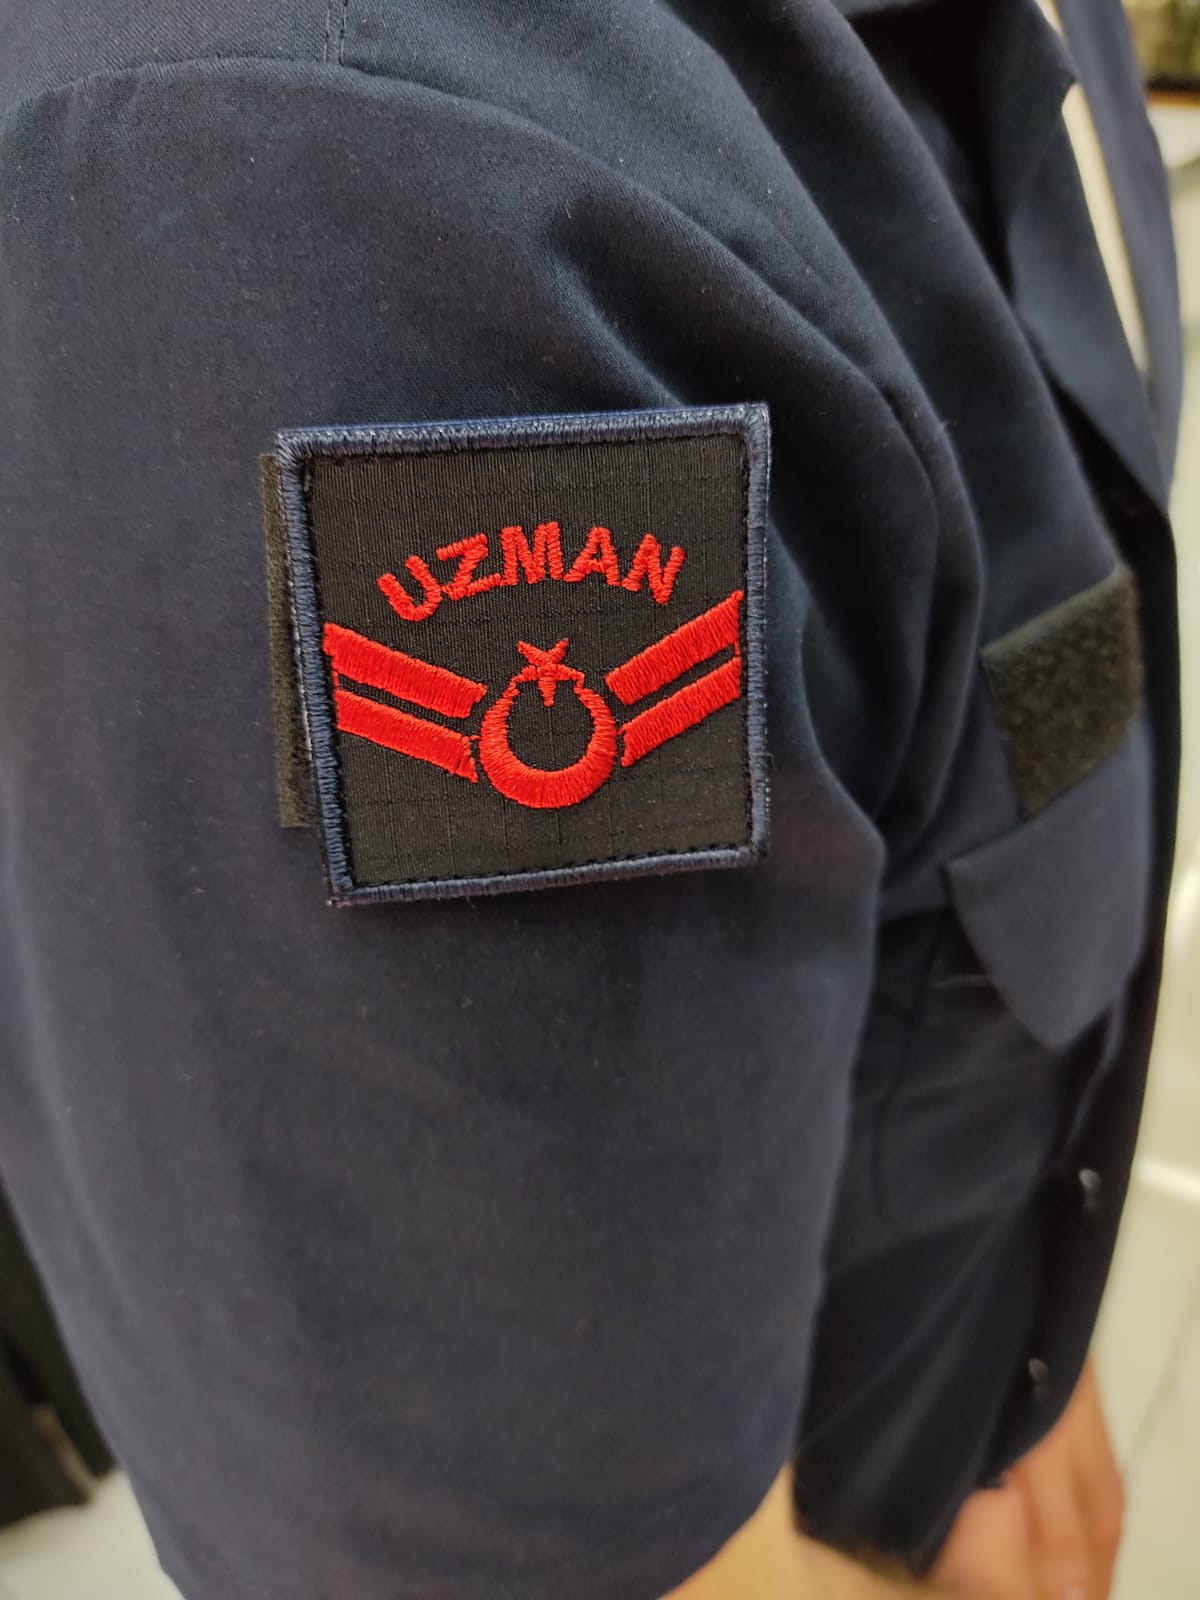 Jandarma Asayiş Uzman Onbaşı 4x4cm Yeni Tip Gömlek Rütbesi